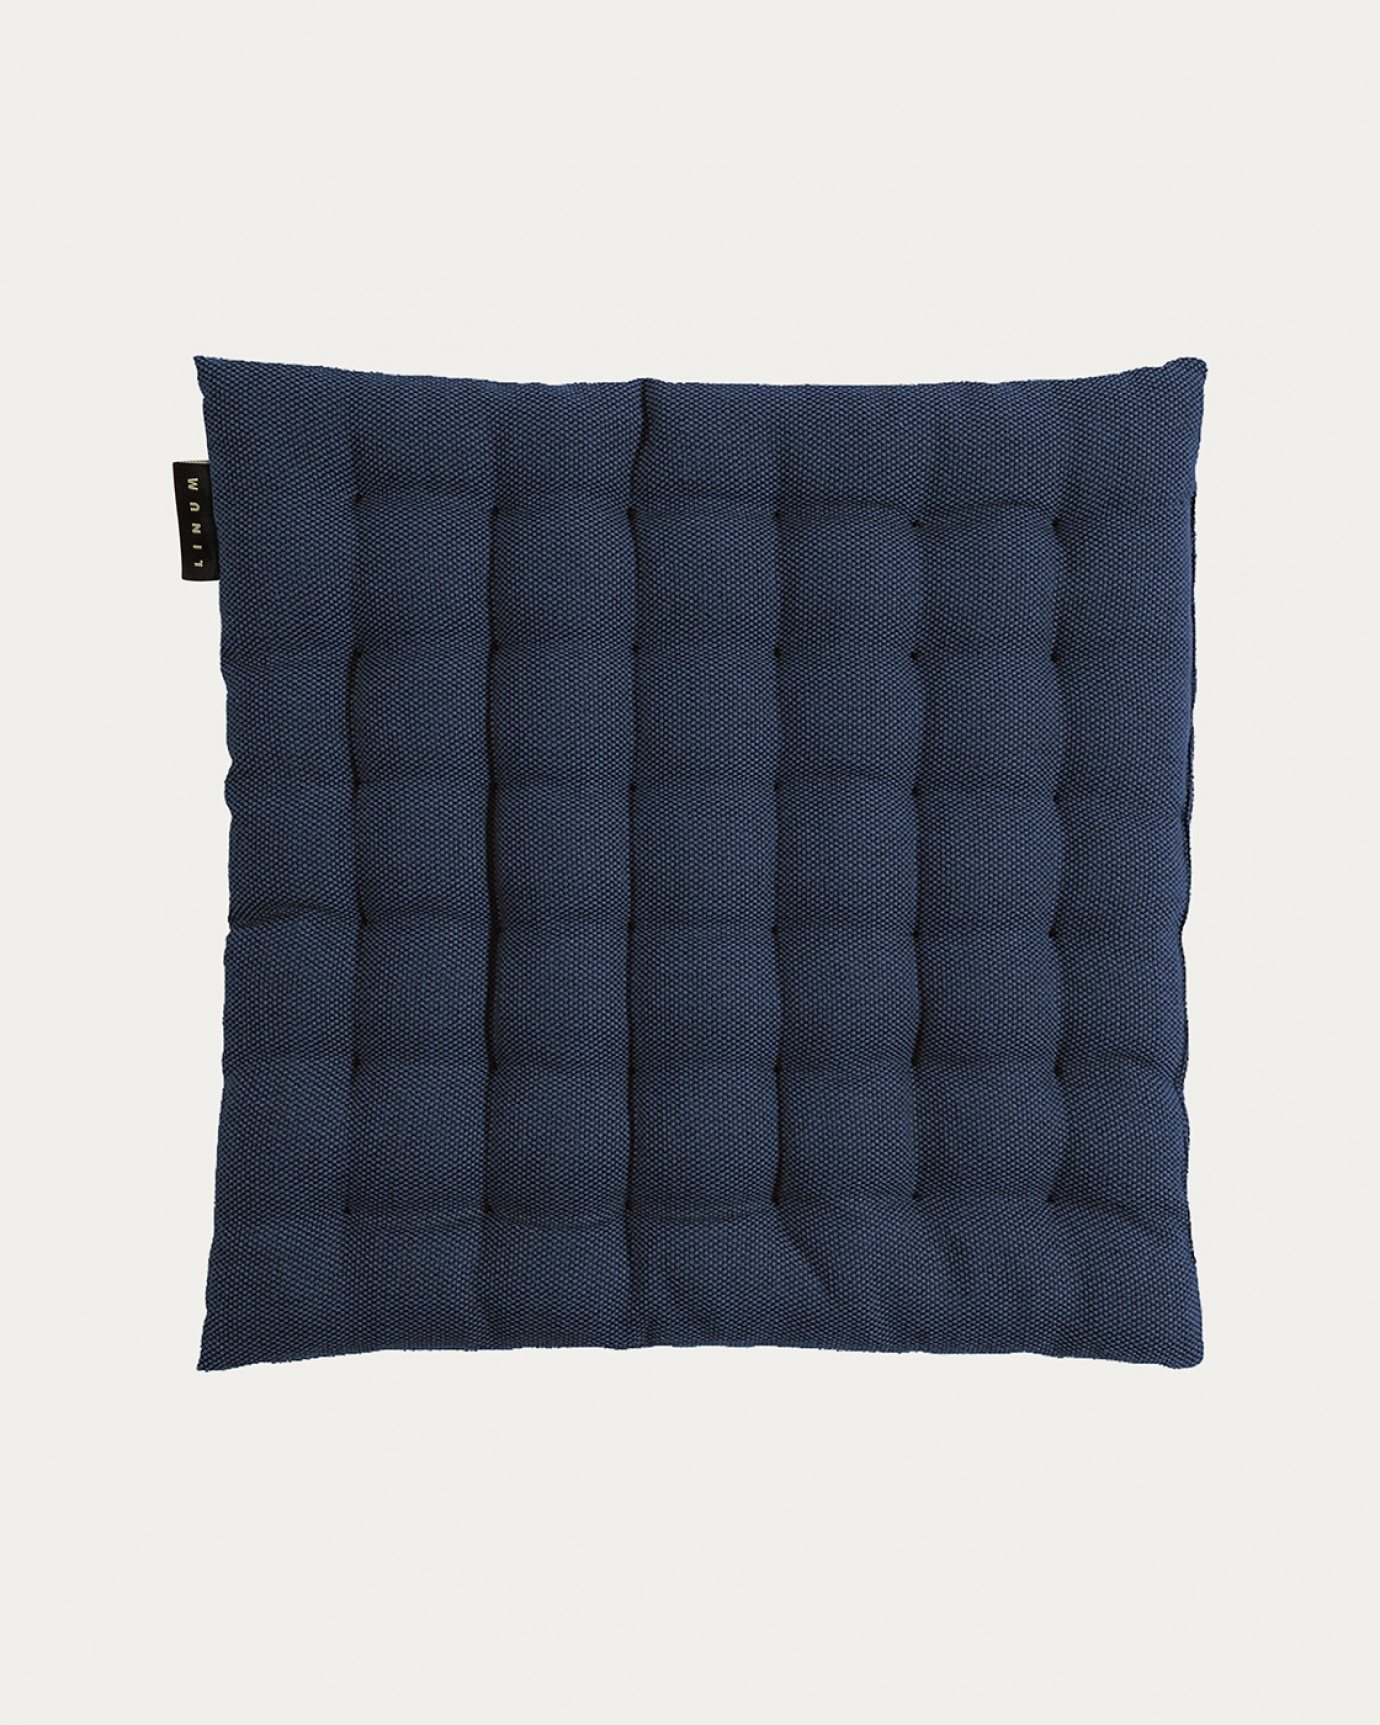 Produktbild tintenblau PEPPER Sitzkissen aus weicher Baumwolle mit Füllung aus recyceltem Polyester von LINUM DESIGN. Größe 40x40 cm.